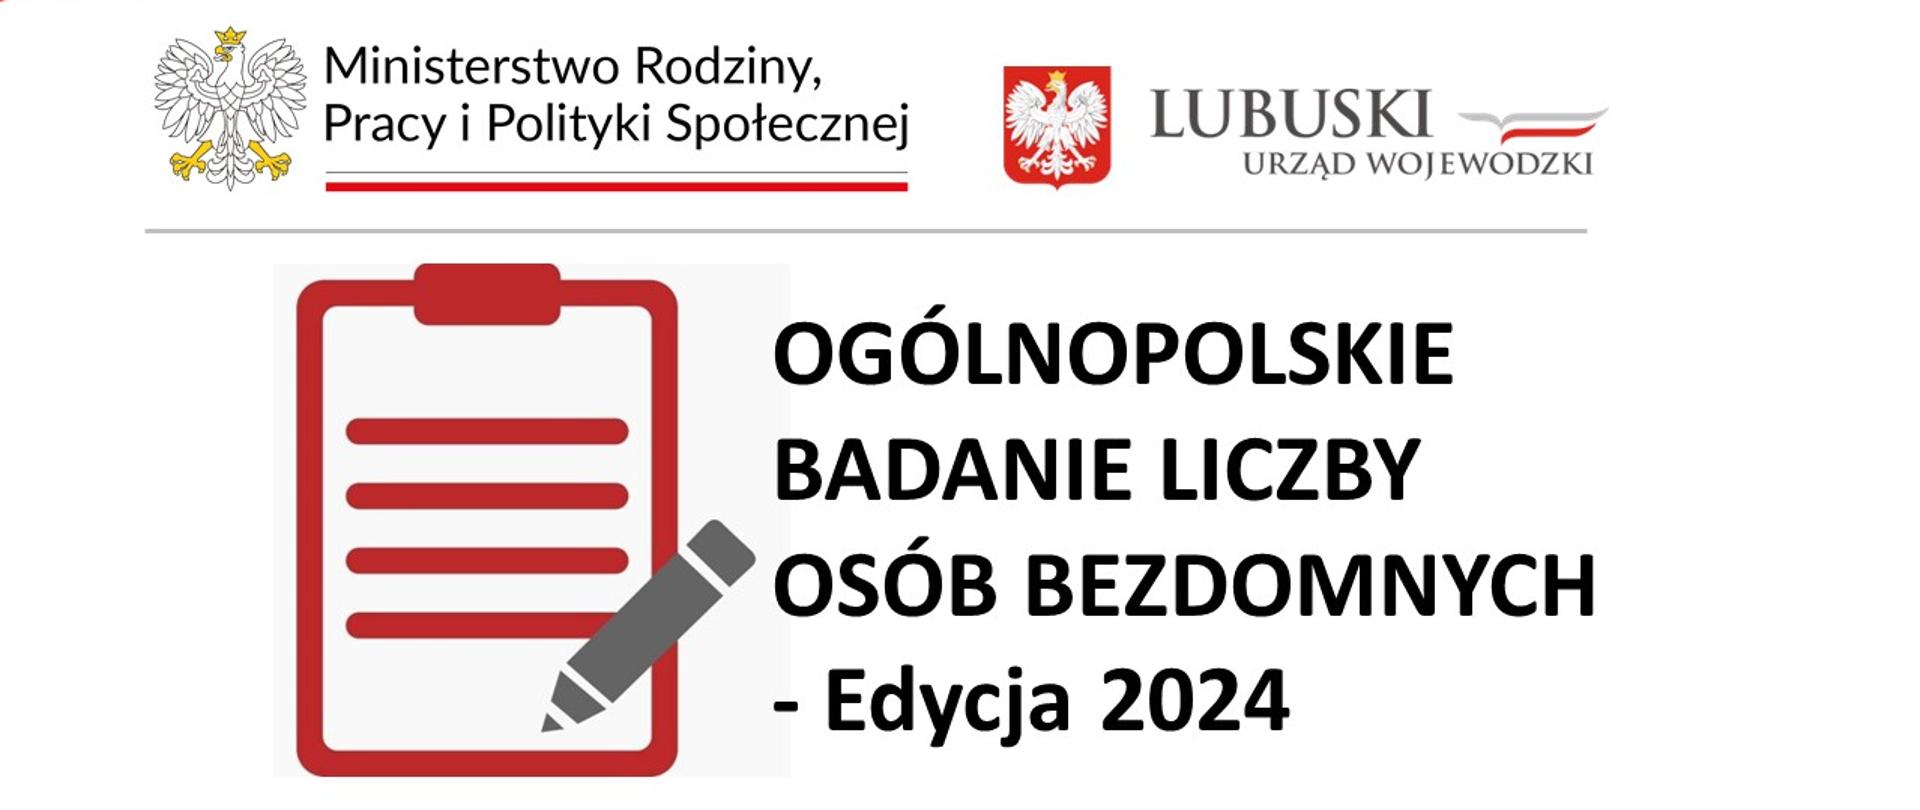 na zdjęciu znajduje się informacja o tym, że Ministerstwo Rodziny, Pracy i Polityki Społecznej i Wojewoda Lubuski przeprowadzają na terenie województwa lubuskiego ogólnopolskie badanie liczby osób bezdomnych